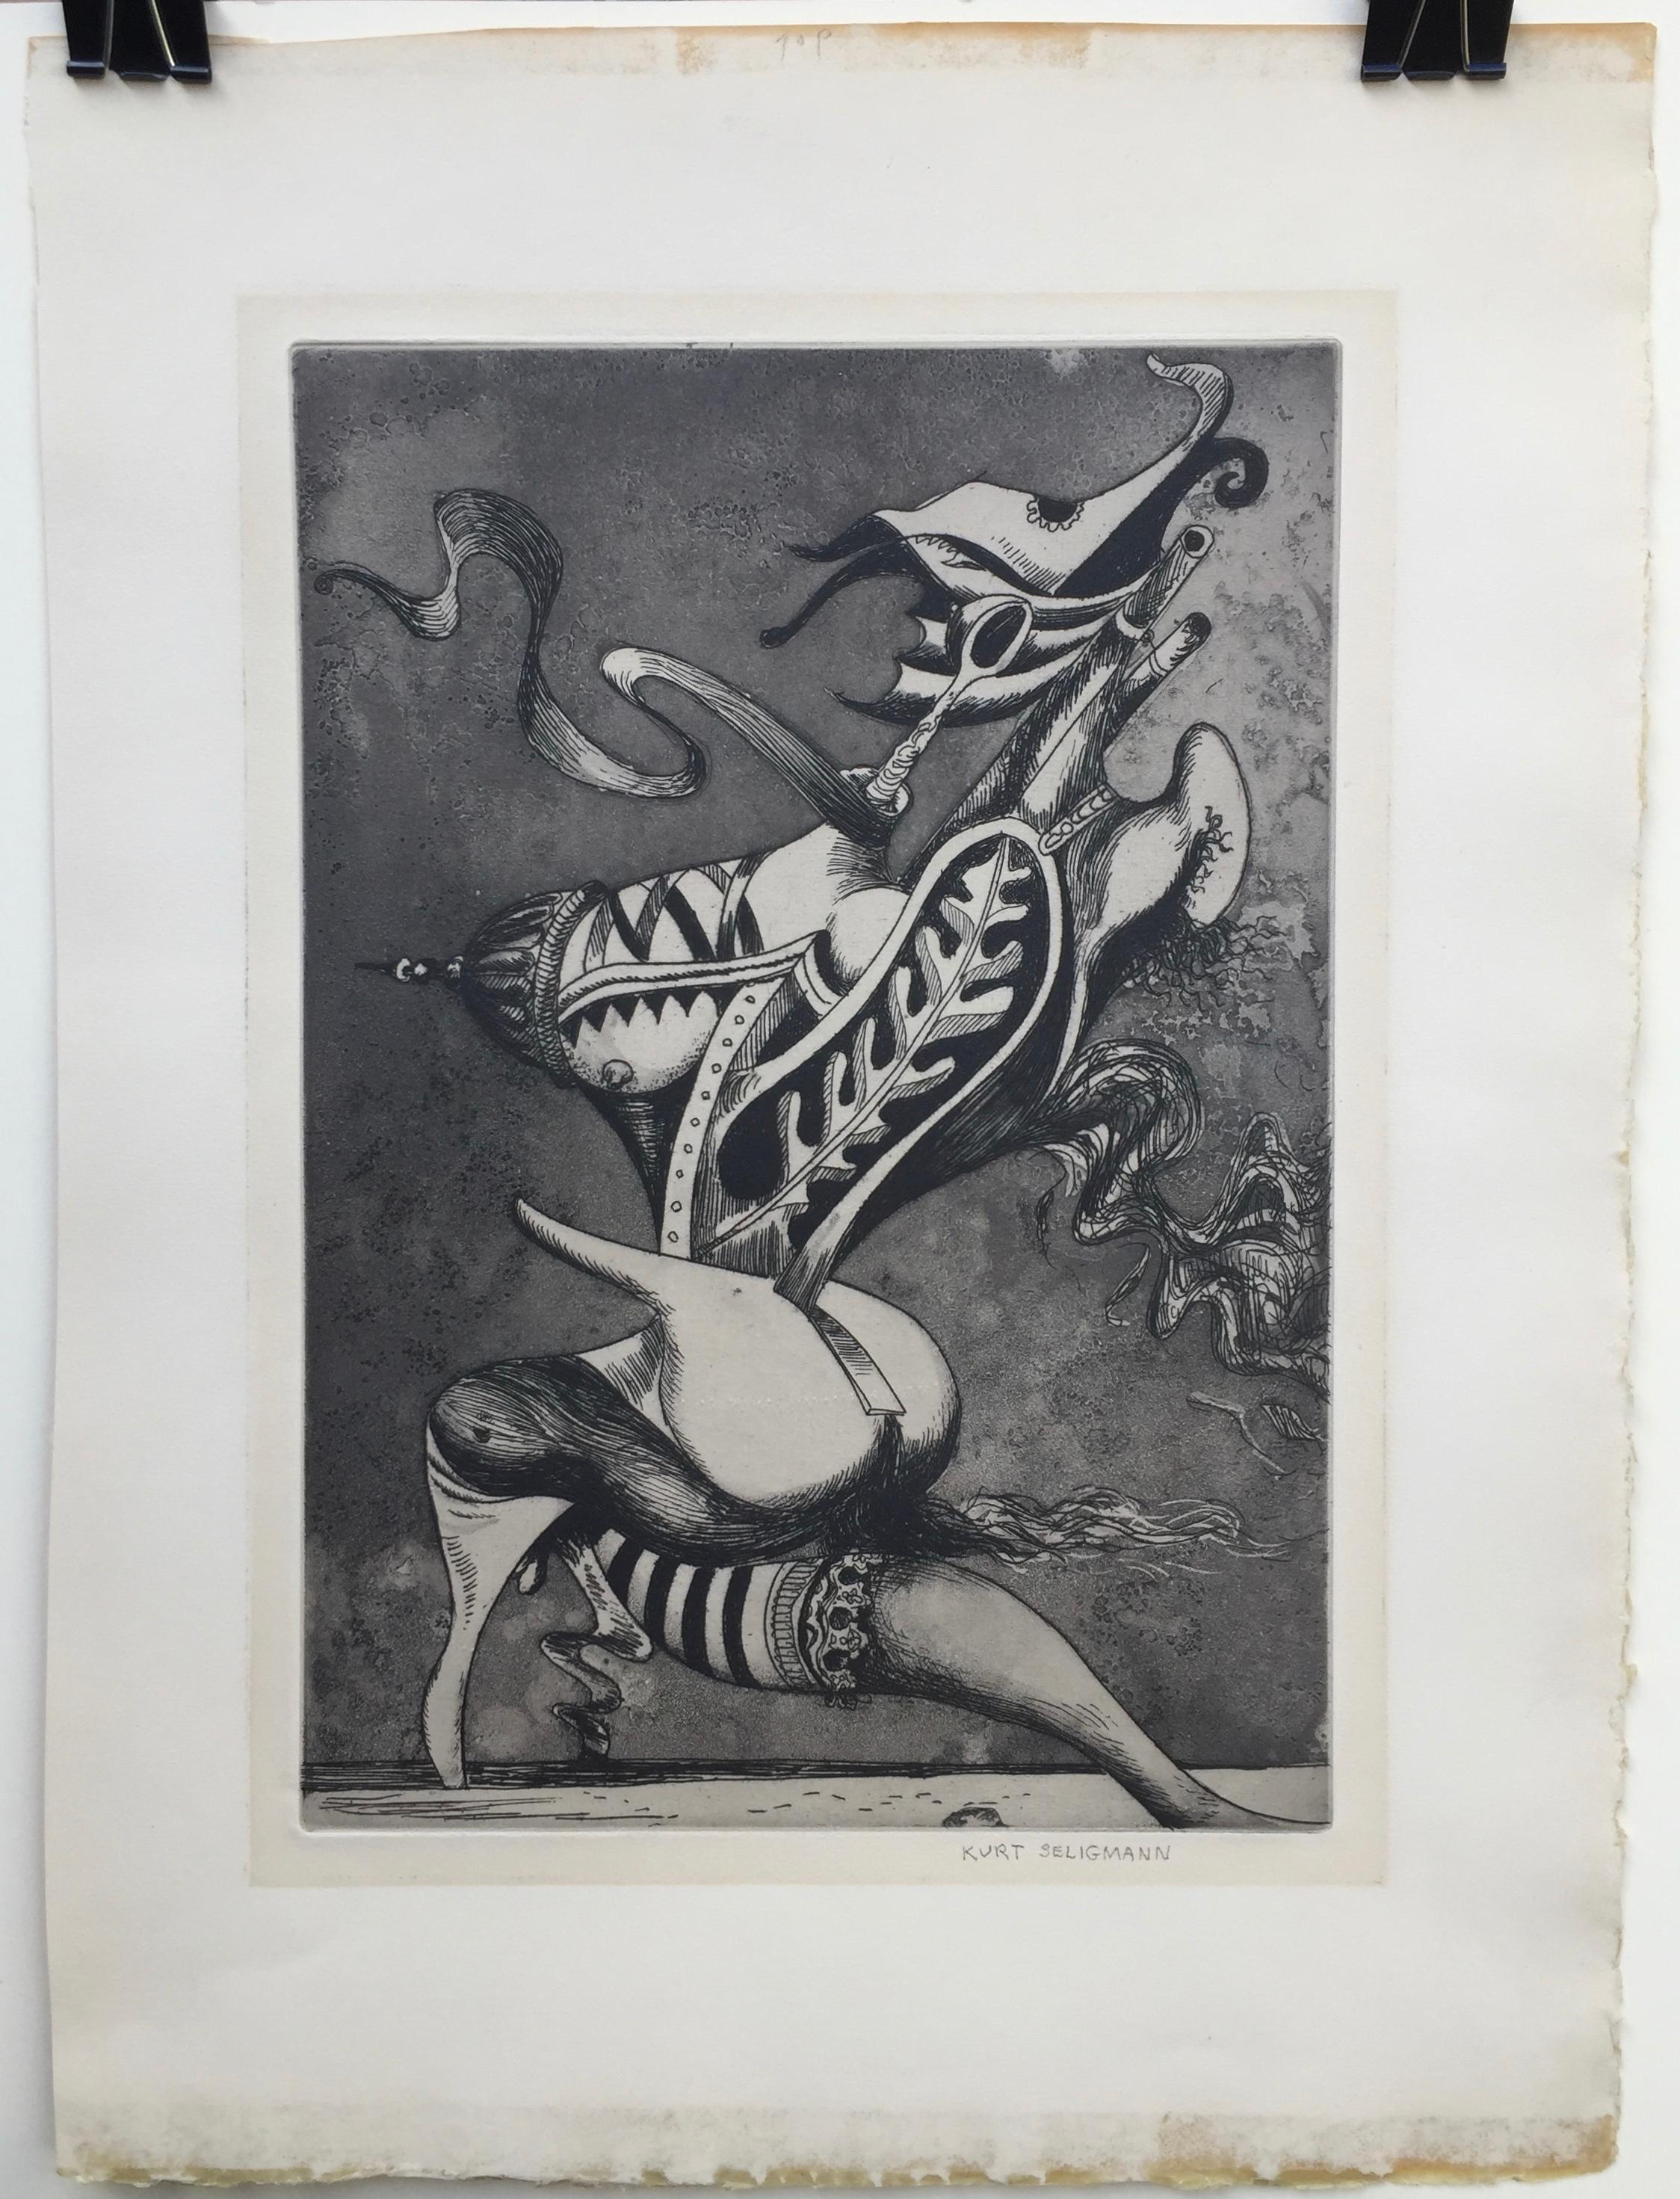  LA SORCIERE - (Die Witze) (Grau), Abstract Print, von Kurt Seligmann